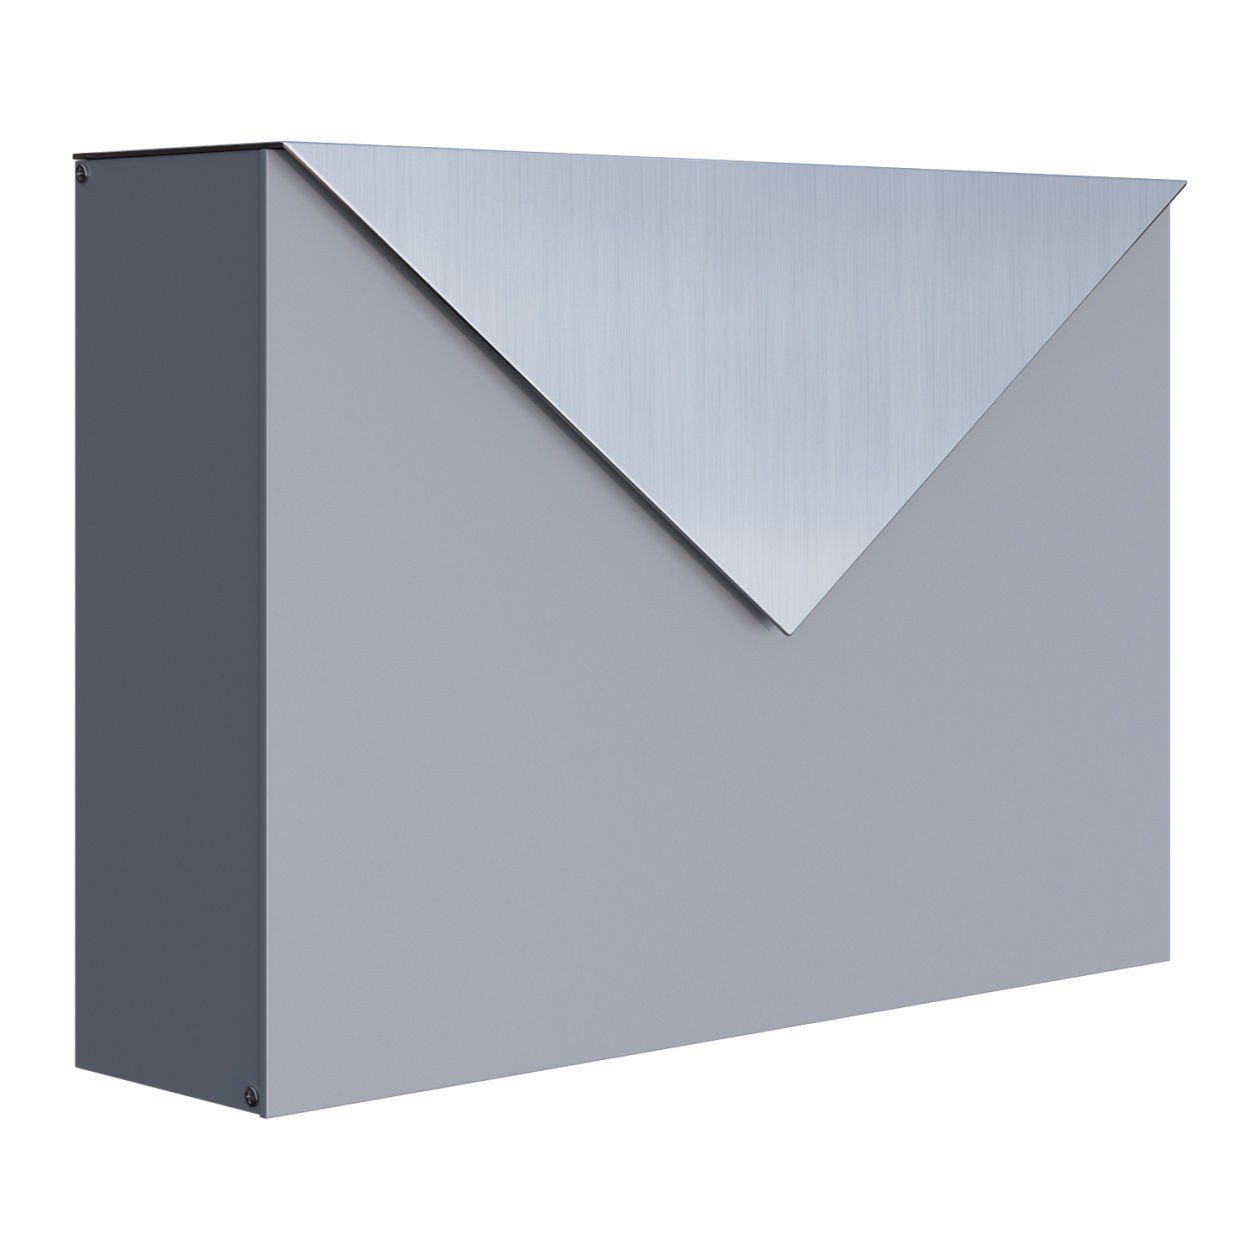 Bravios Briefkasten Briefkasten Letter Grau Metallic mit Edelstahlkla